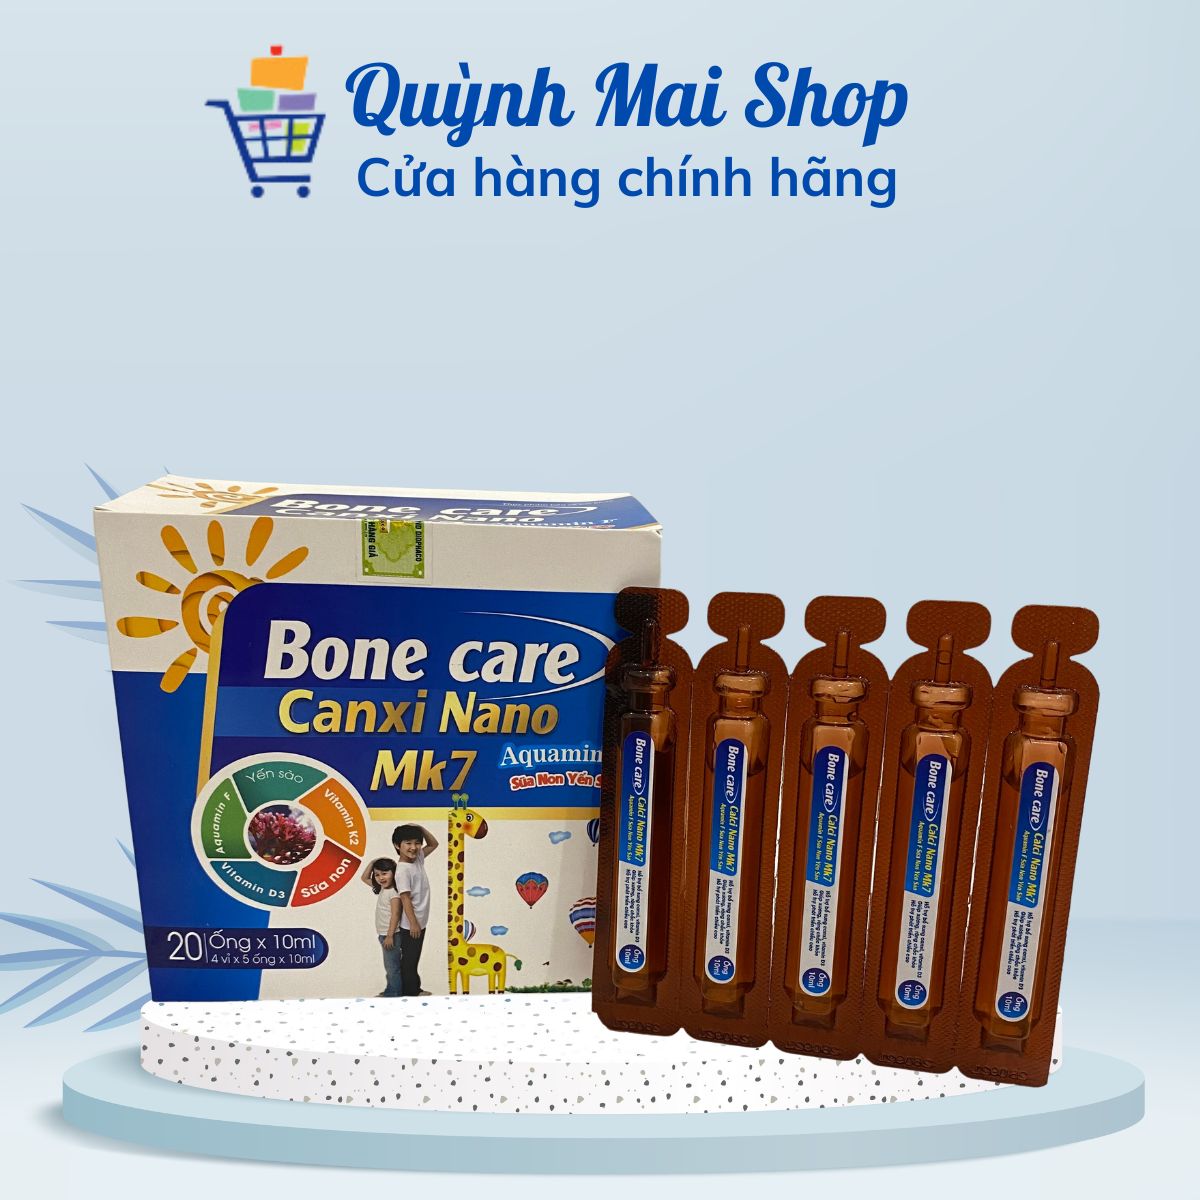 Bone care Canxi Nano MK7 Aquamin F Sữa non Yến sào hộp 20 ống x 10ml giúp bổ sung canxi vitamin d3 giúp xương răng chắc khỏe hỗ trợ phát triển chiều cao giảm nguy cơ còi xương ở trẻ em loãng xương ở người lớn